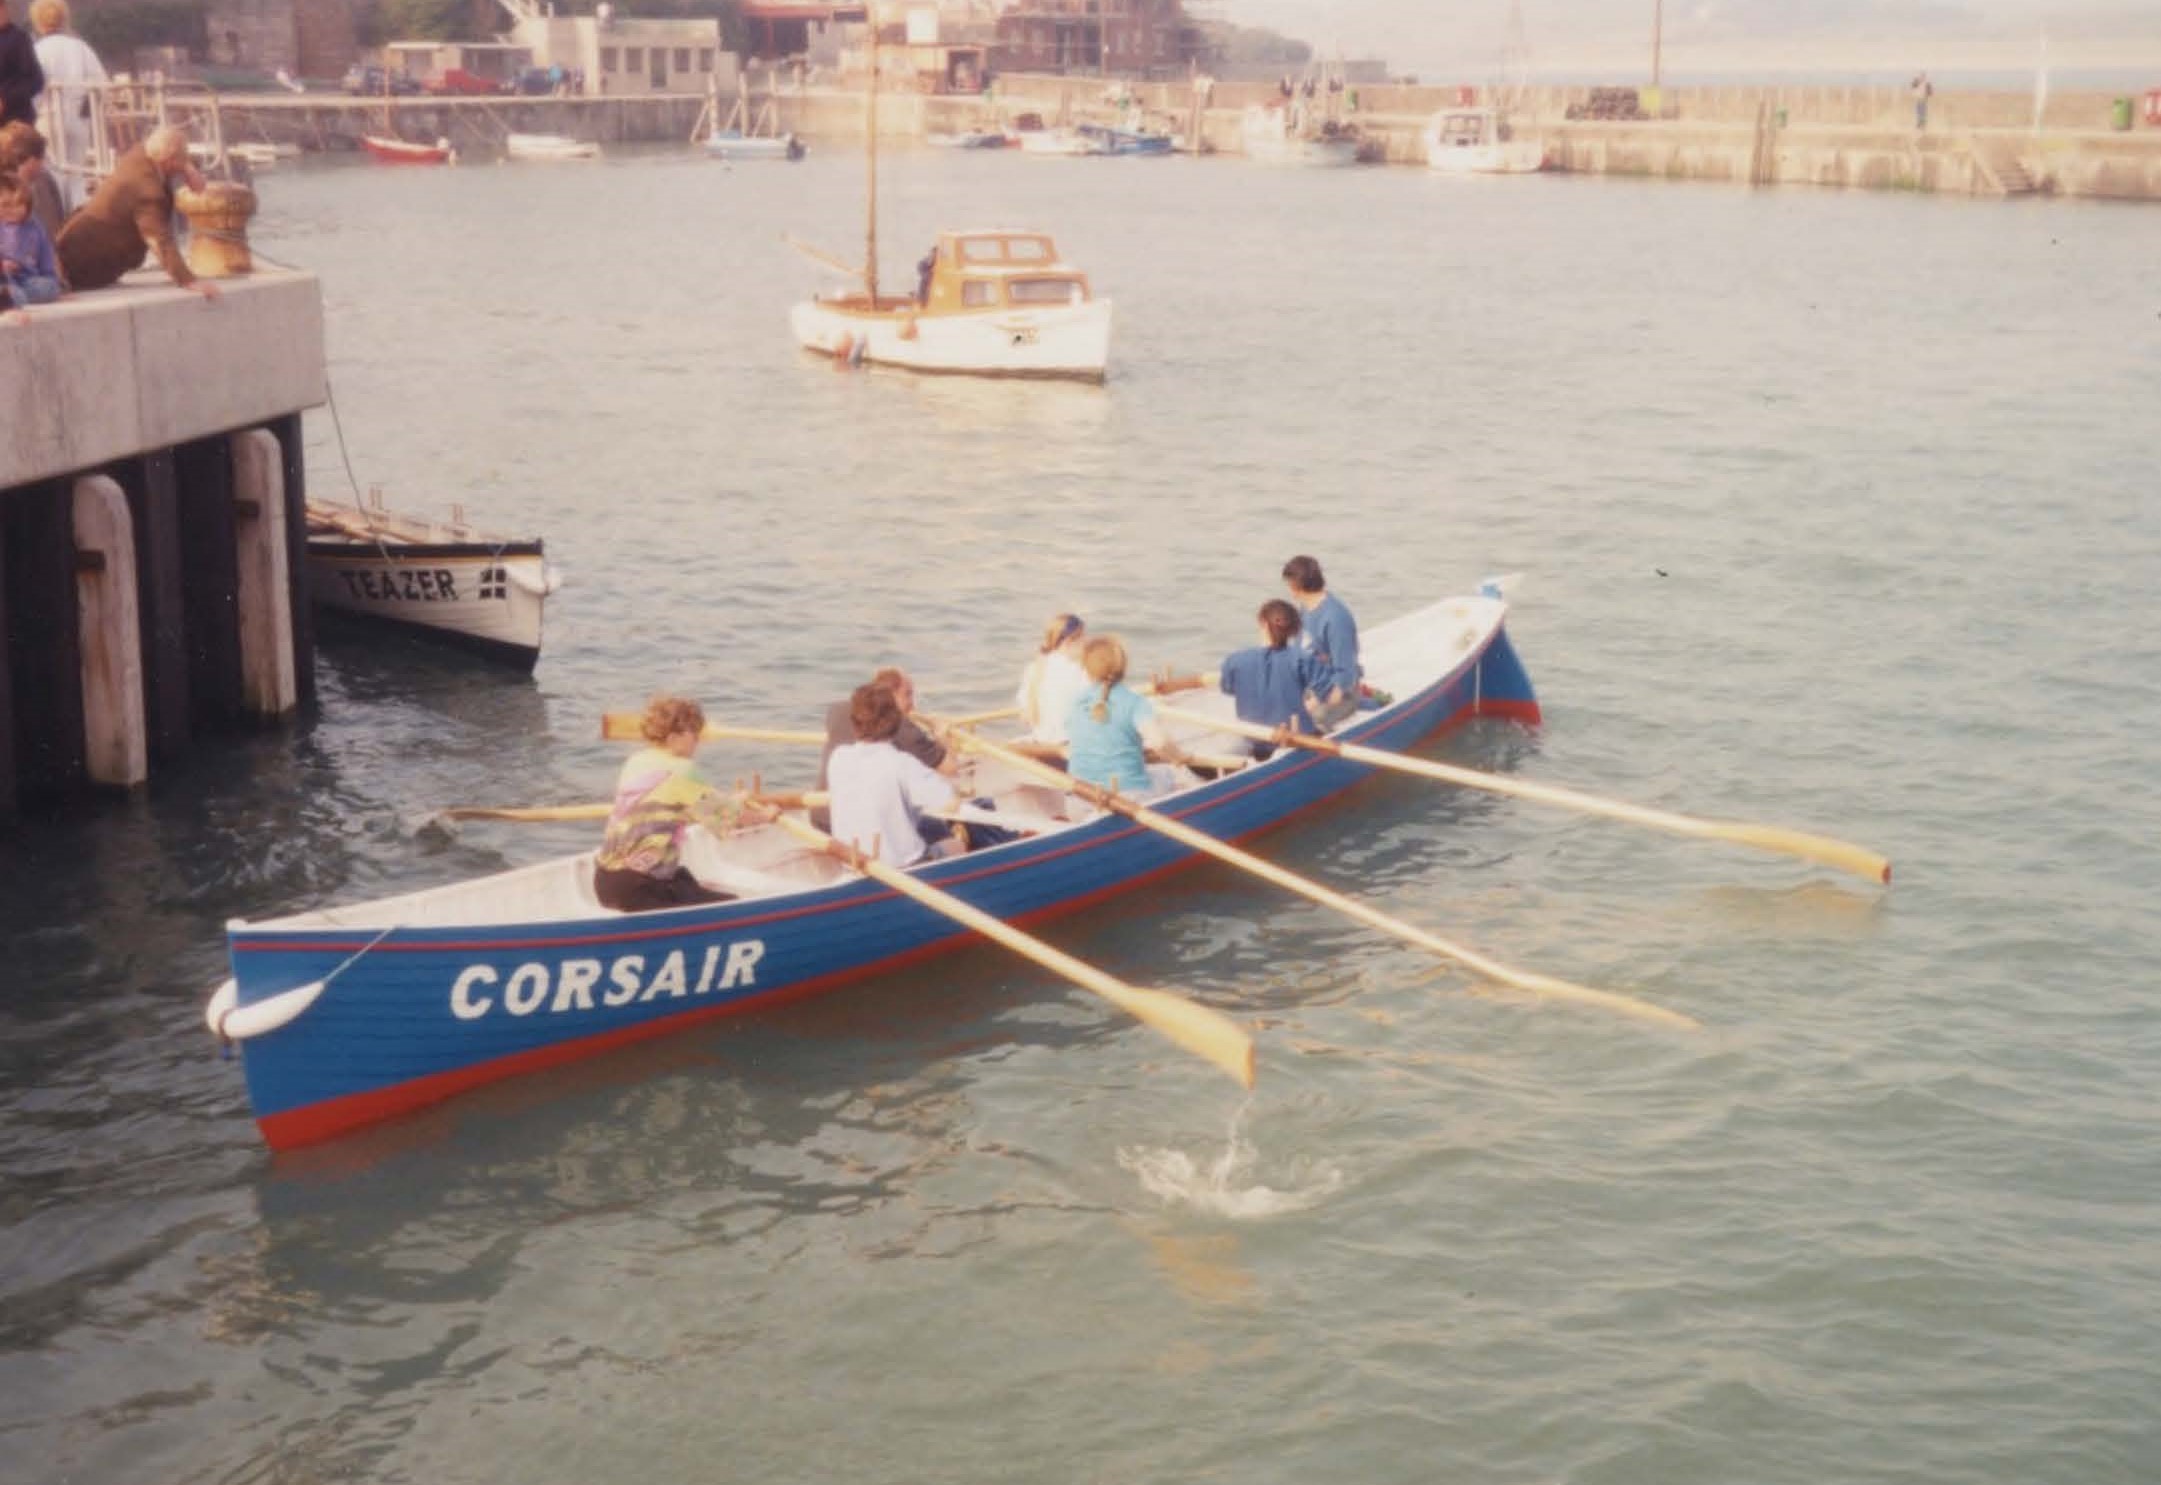 Corsair's first race